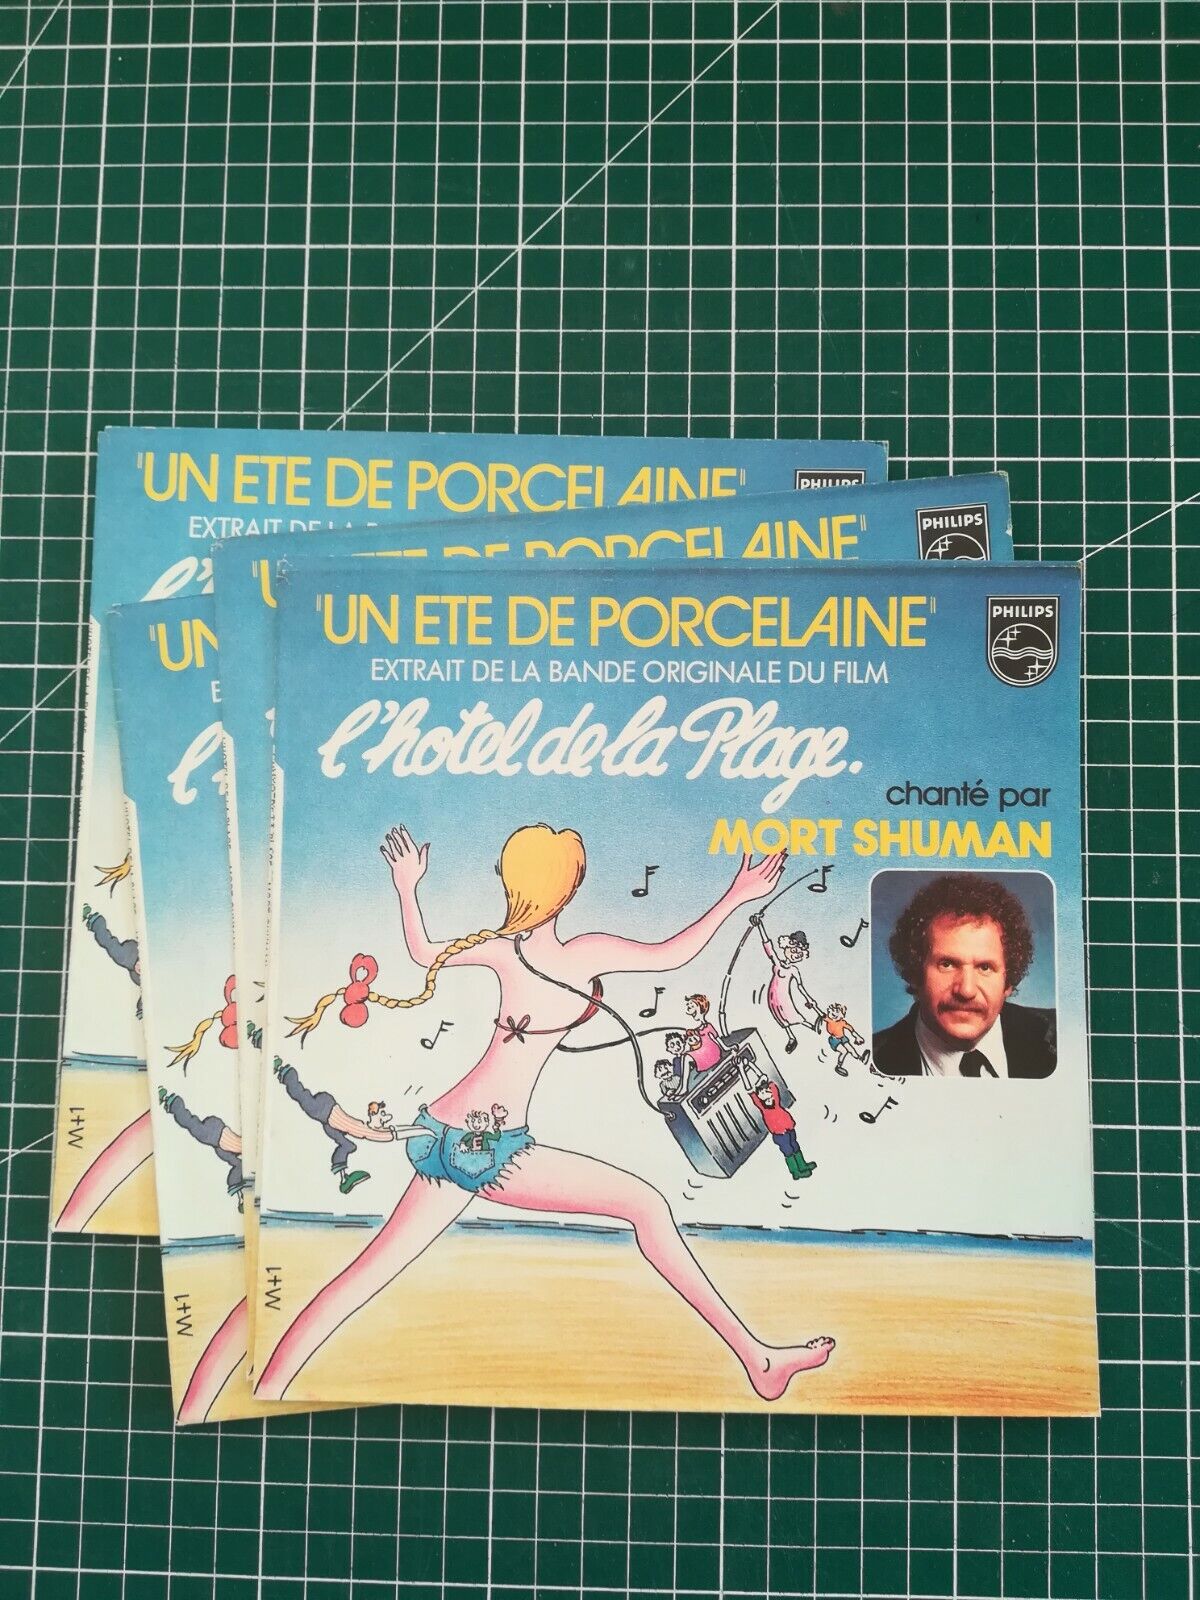 Pouch Single 45T Vintage, Vgc, Mort Shuman - Un Summer of Porcelain